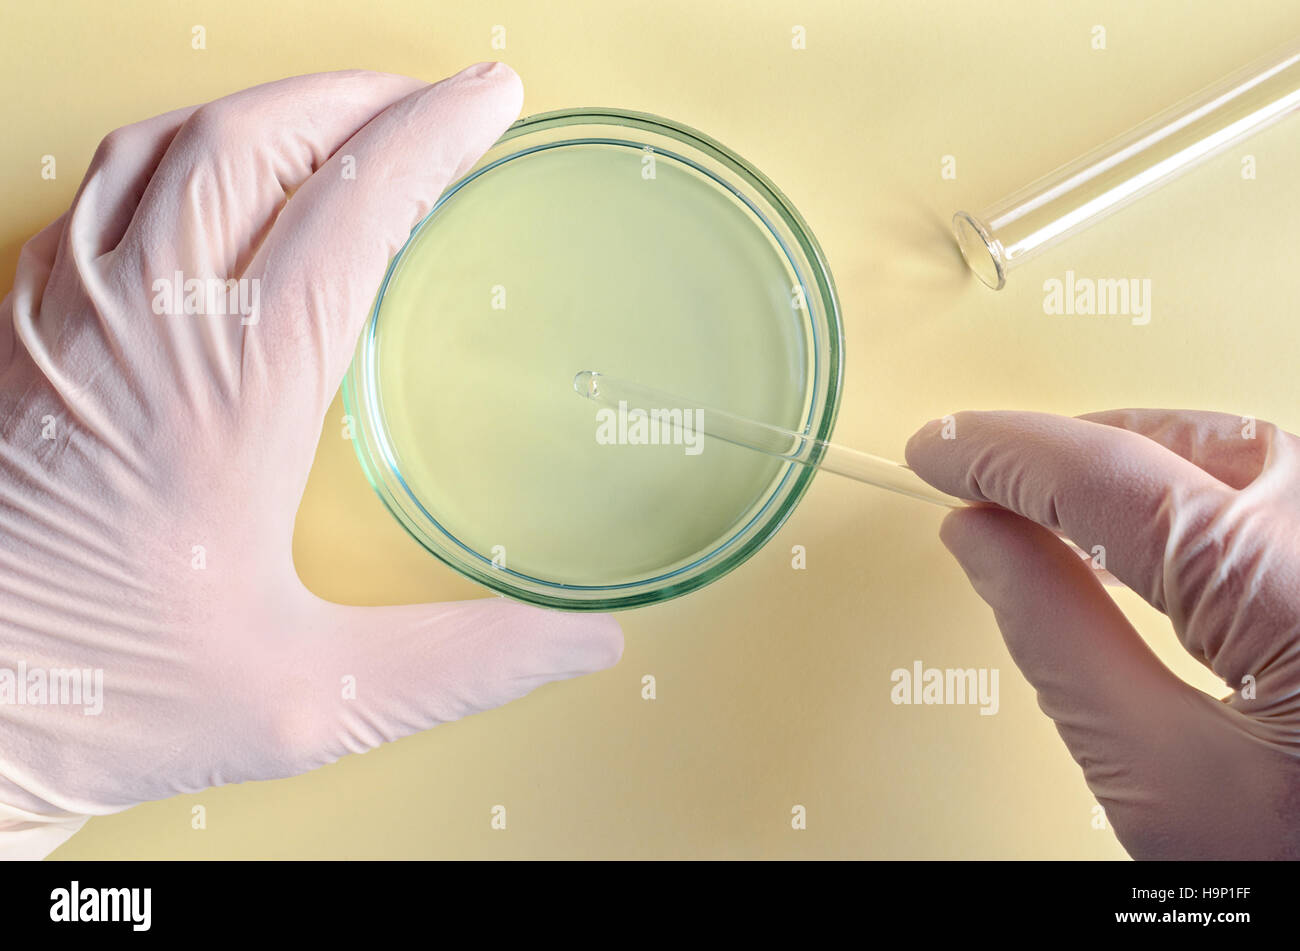 Chemische Forschung in Petrischalen auf blauem Hintergrund. Forscher, die Farbtafeln in einem mikrobiologischen Labor vorbereitet. Hand eines Technikers impfen Stockfoto